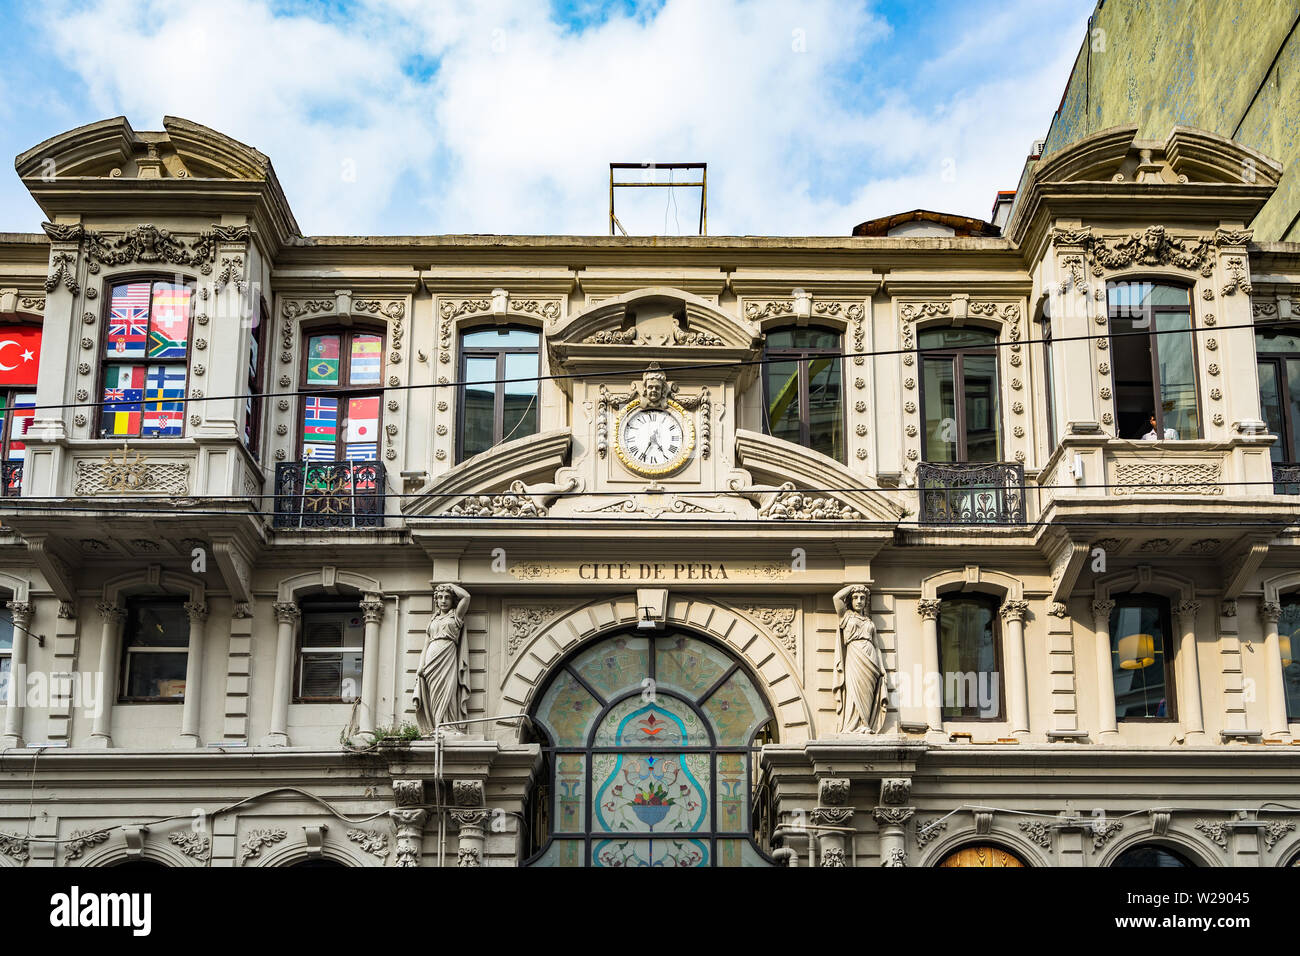 Fassade des Cicek Pasaji (Cite de Pera), einem berühmten historischen Passage auf der Istiklal Caddesi im 19. Jahrhundert gebaut. Istanbul, Türkei, Oktober 2018 Stockfoto